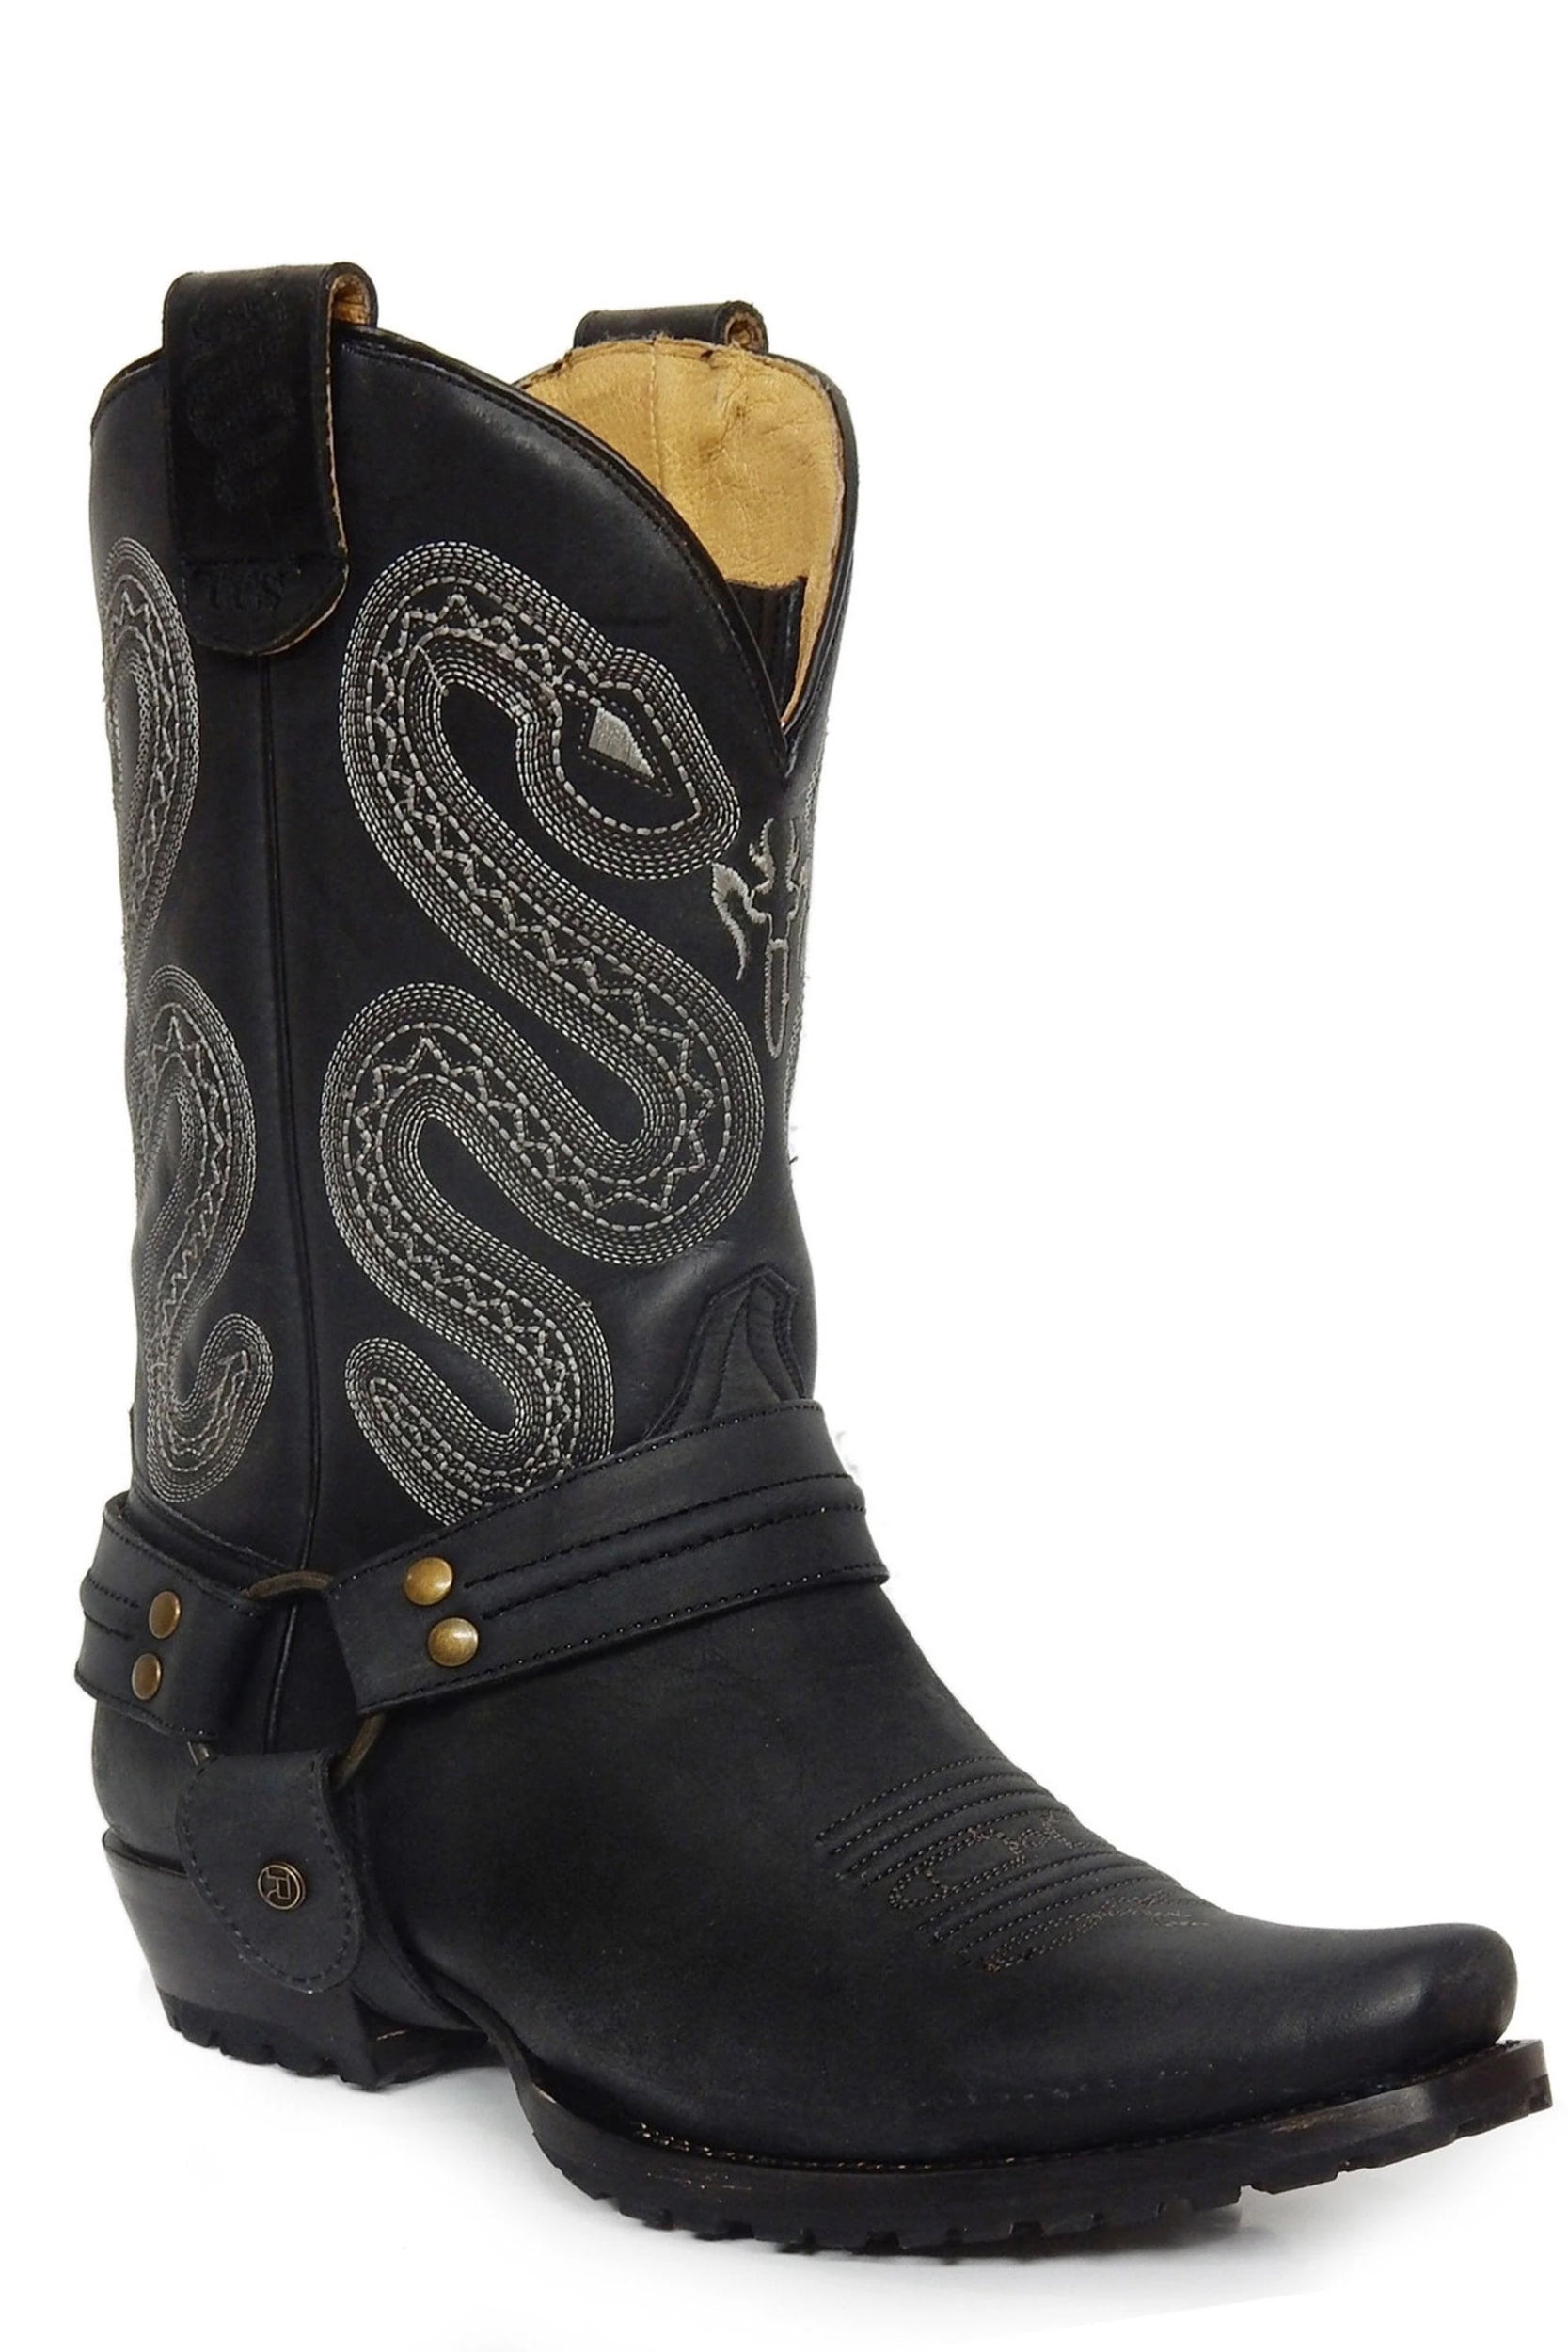 roper men's sting western boot, black, 12 d medium us - Walmart.com